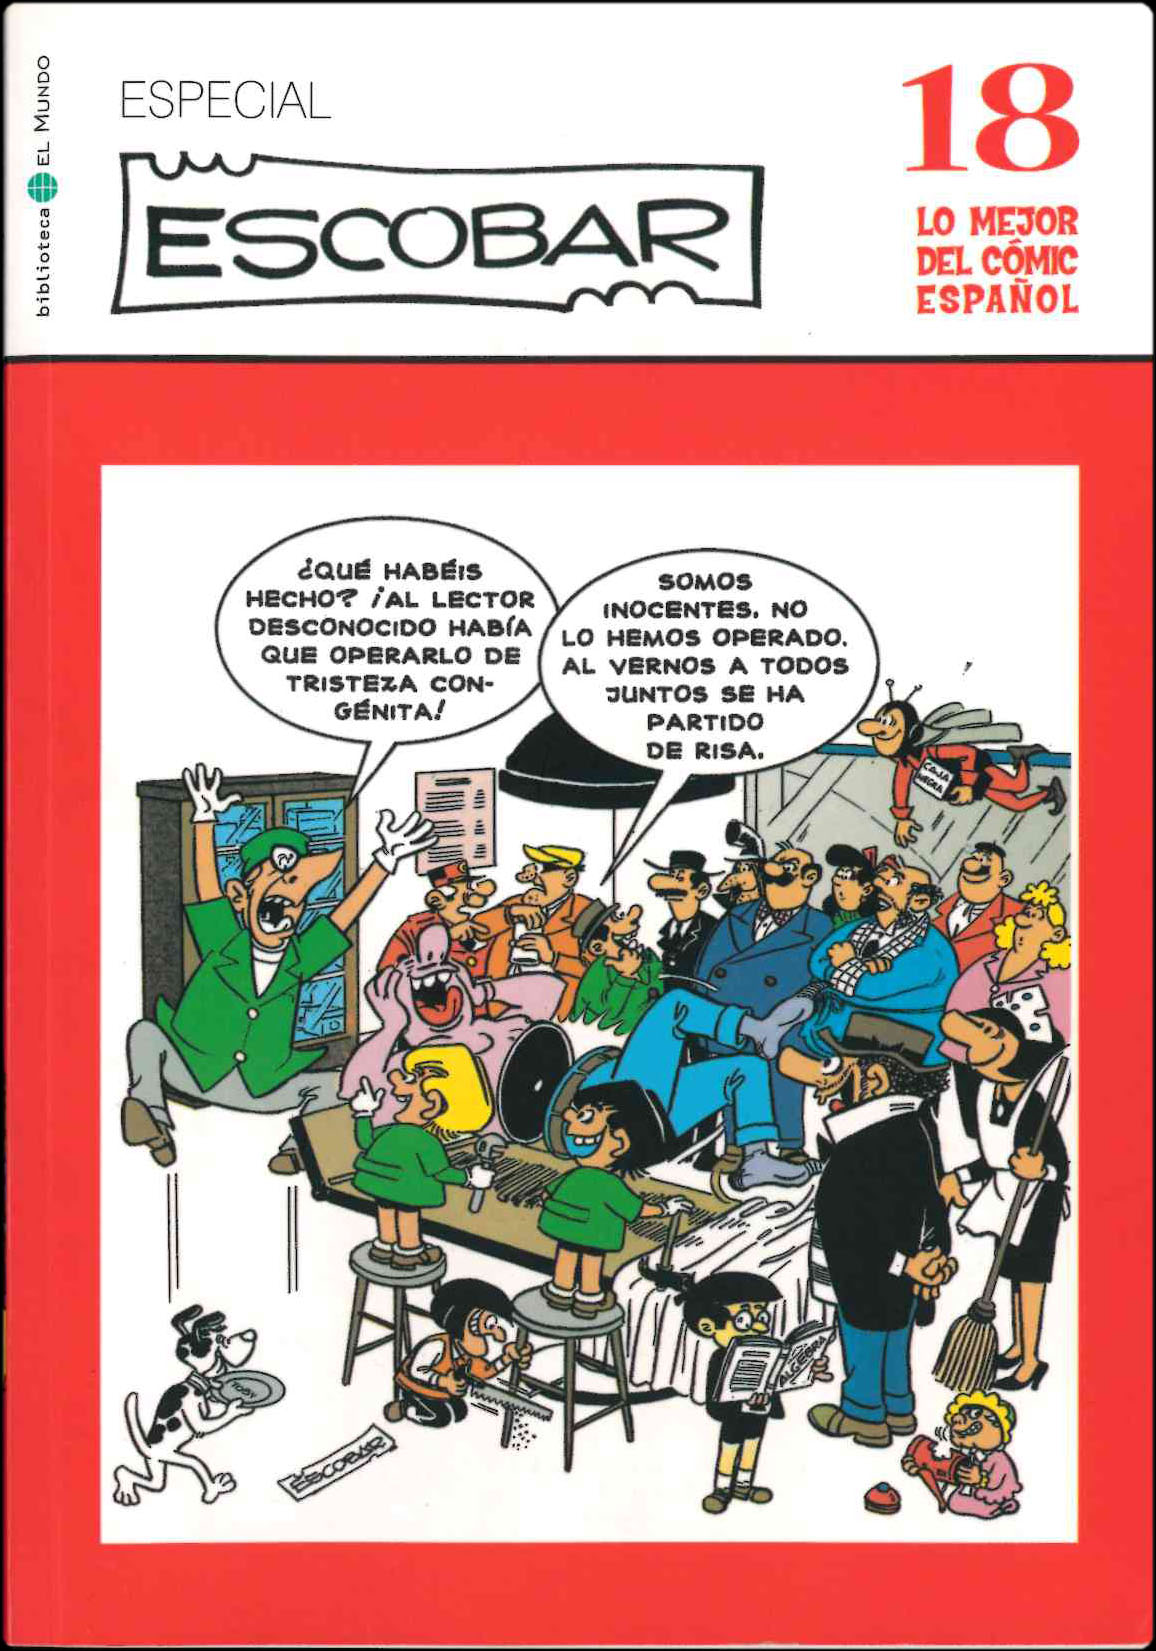 Lo mejor del Cómic Español. Grupo Zeta: El Mundo / Ediciones B 2006. Nº 18. Especial Escobar